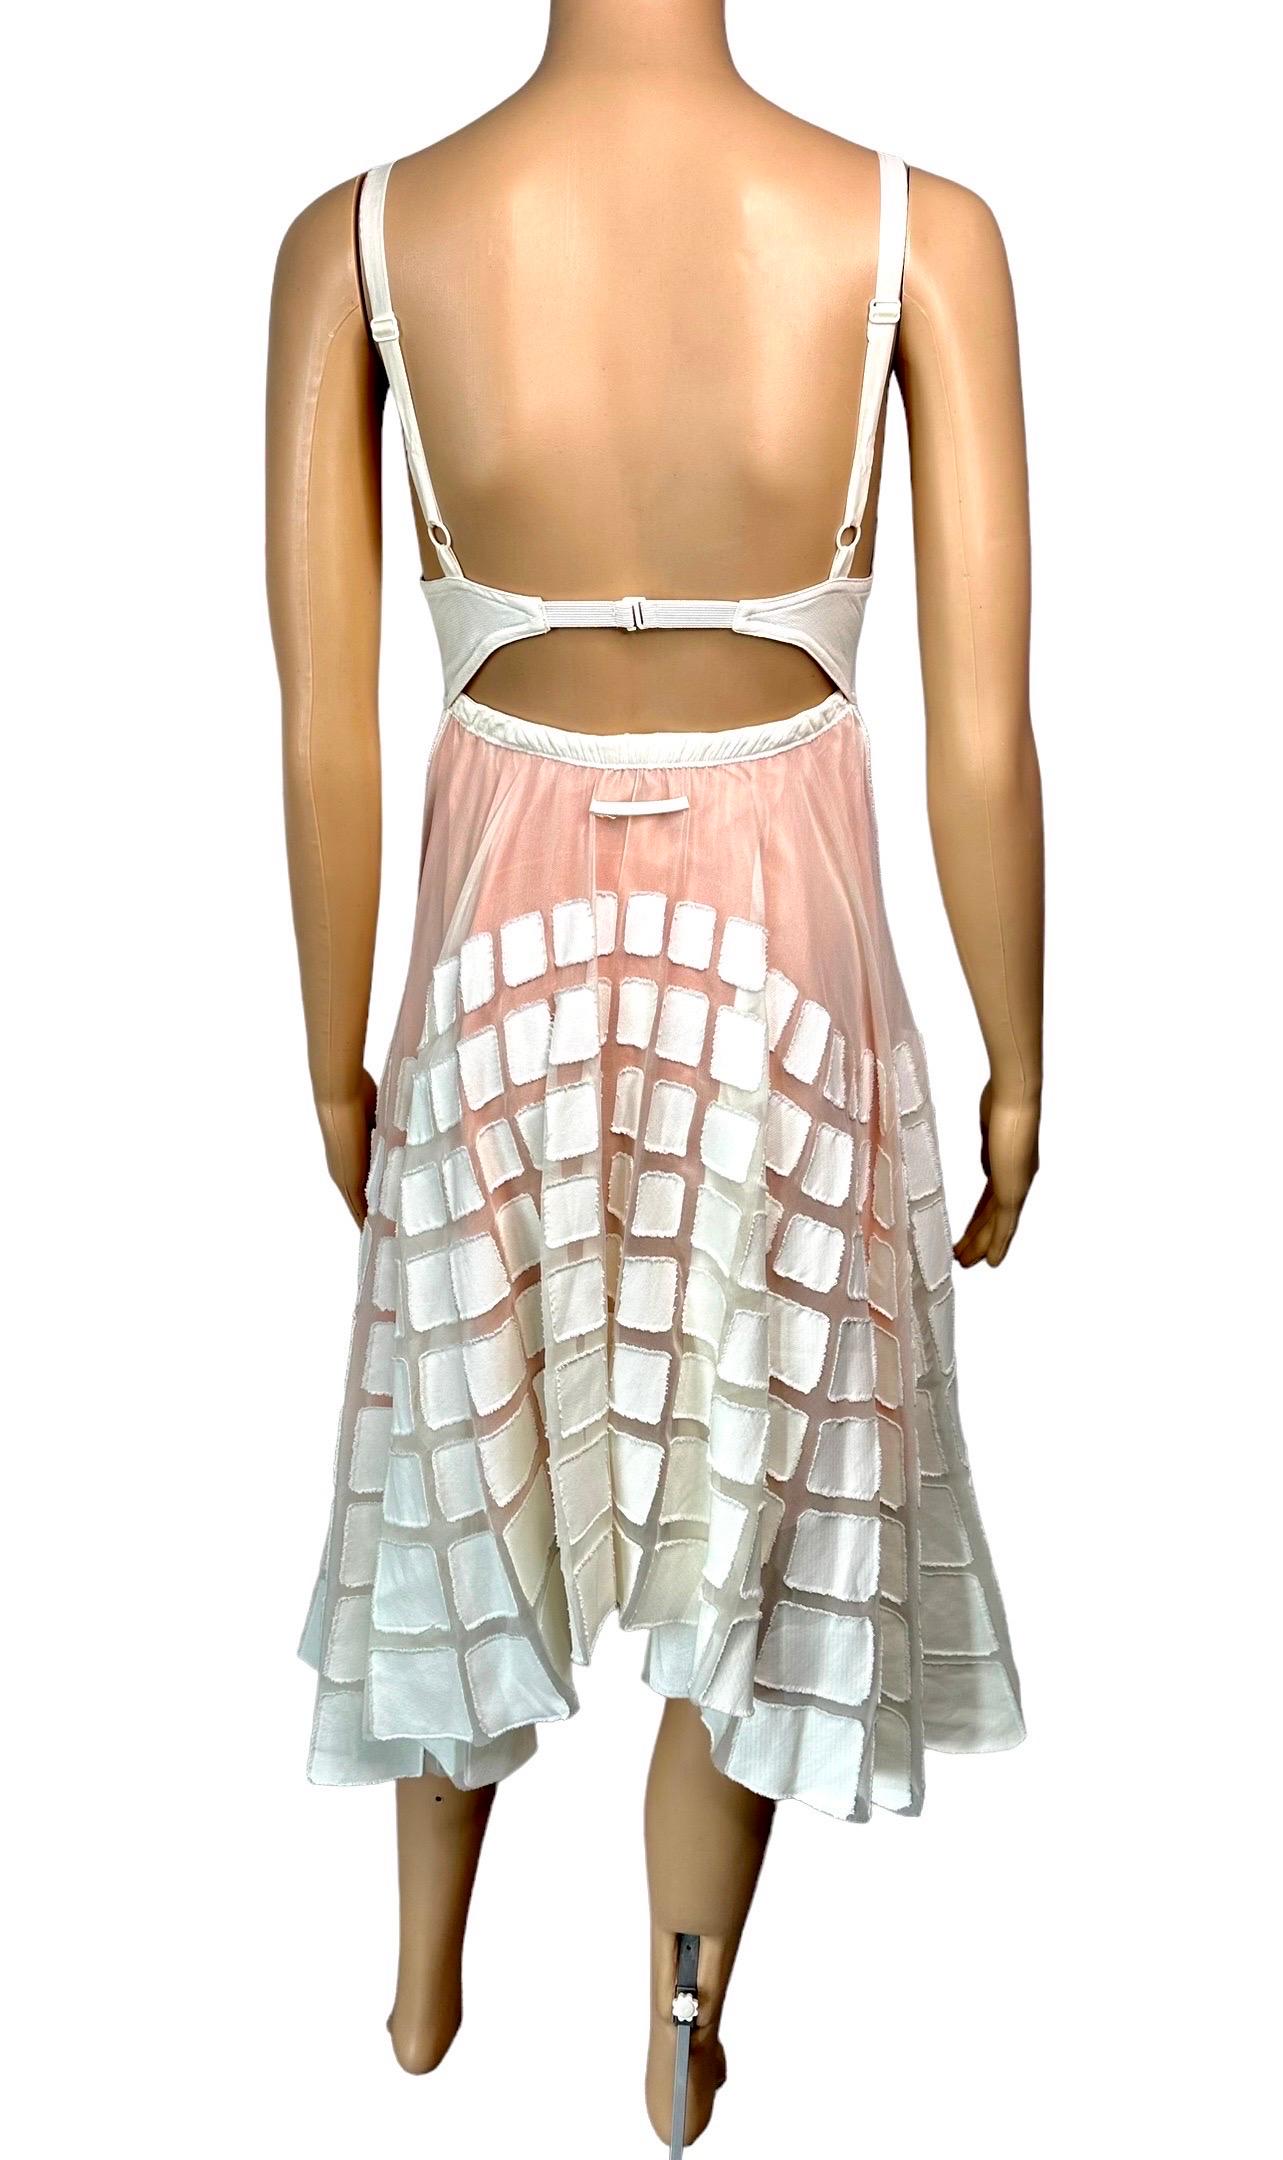 Jean Paul Gaultier S/S 2010 Runway Cone Bra Bustier Cutout Sheer Dress  For Sale 7